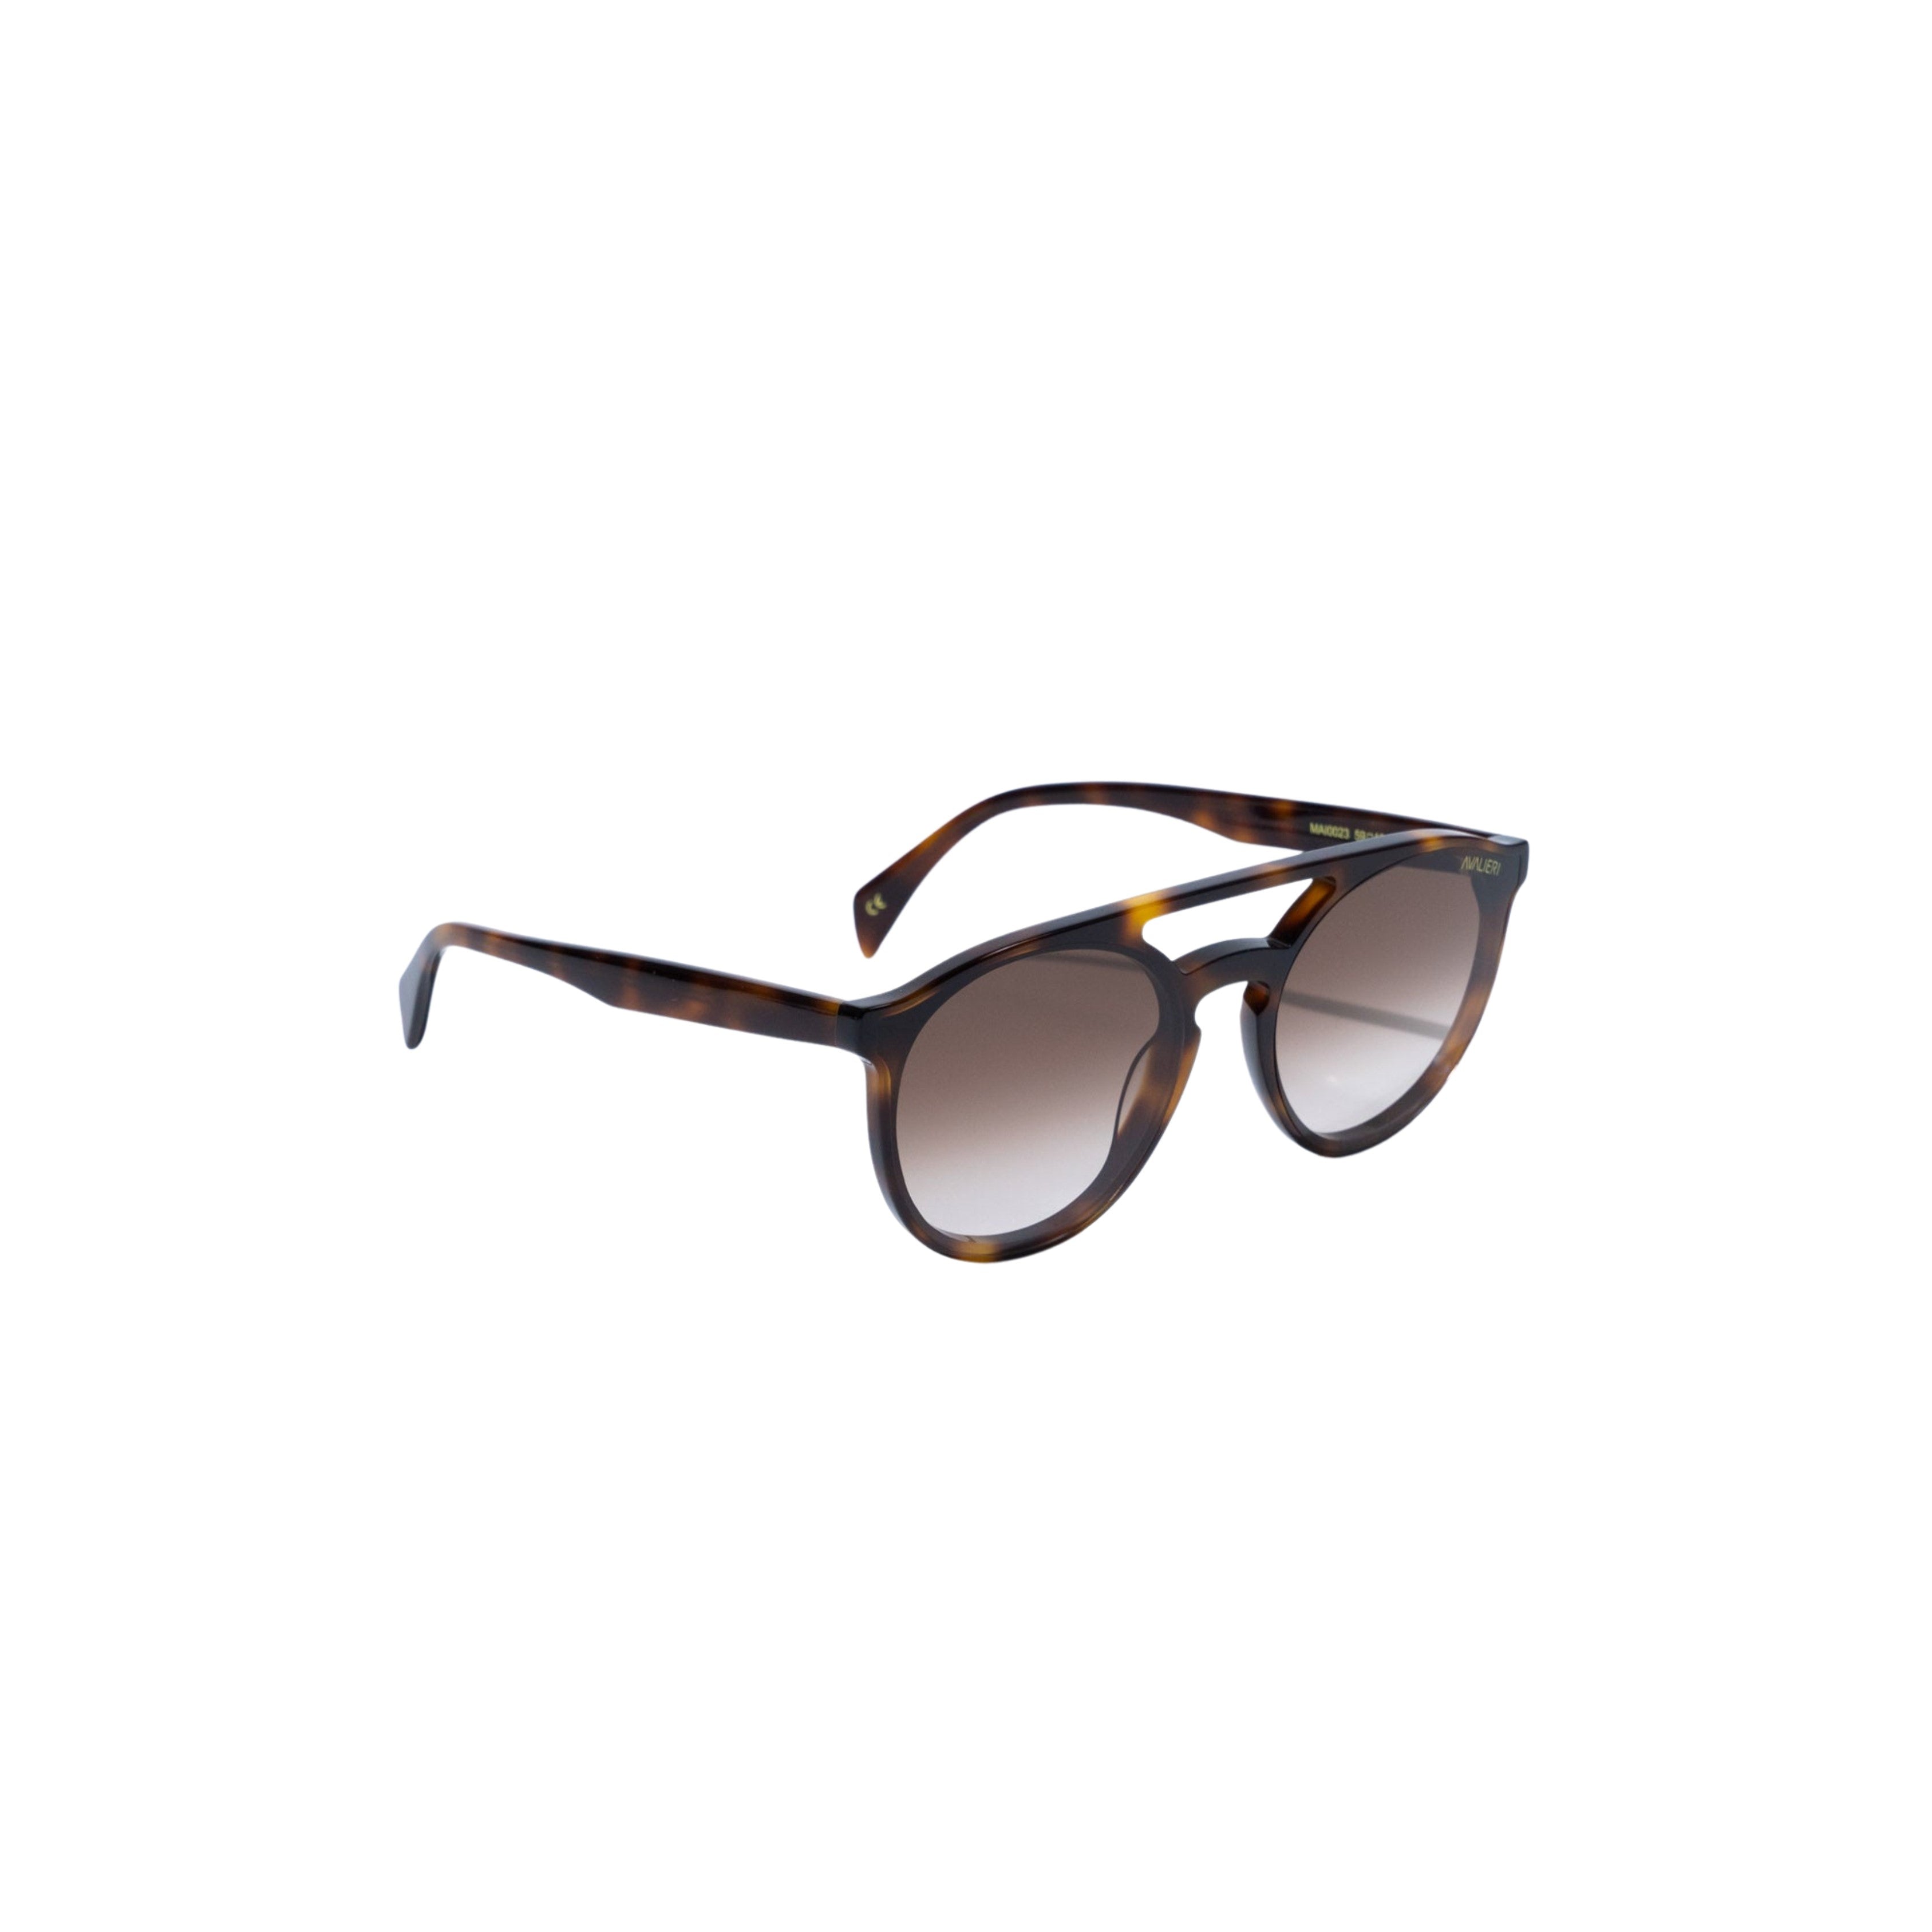 Avalieri Brown Sunglasses for Men and Women - AVSG-0006